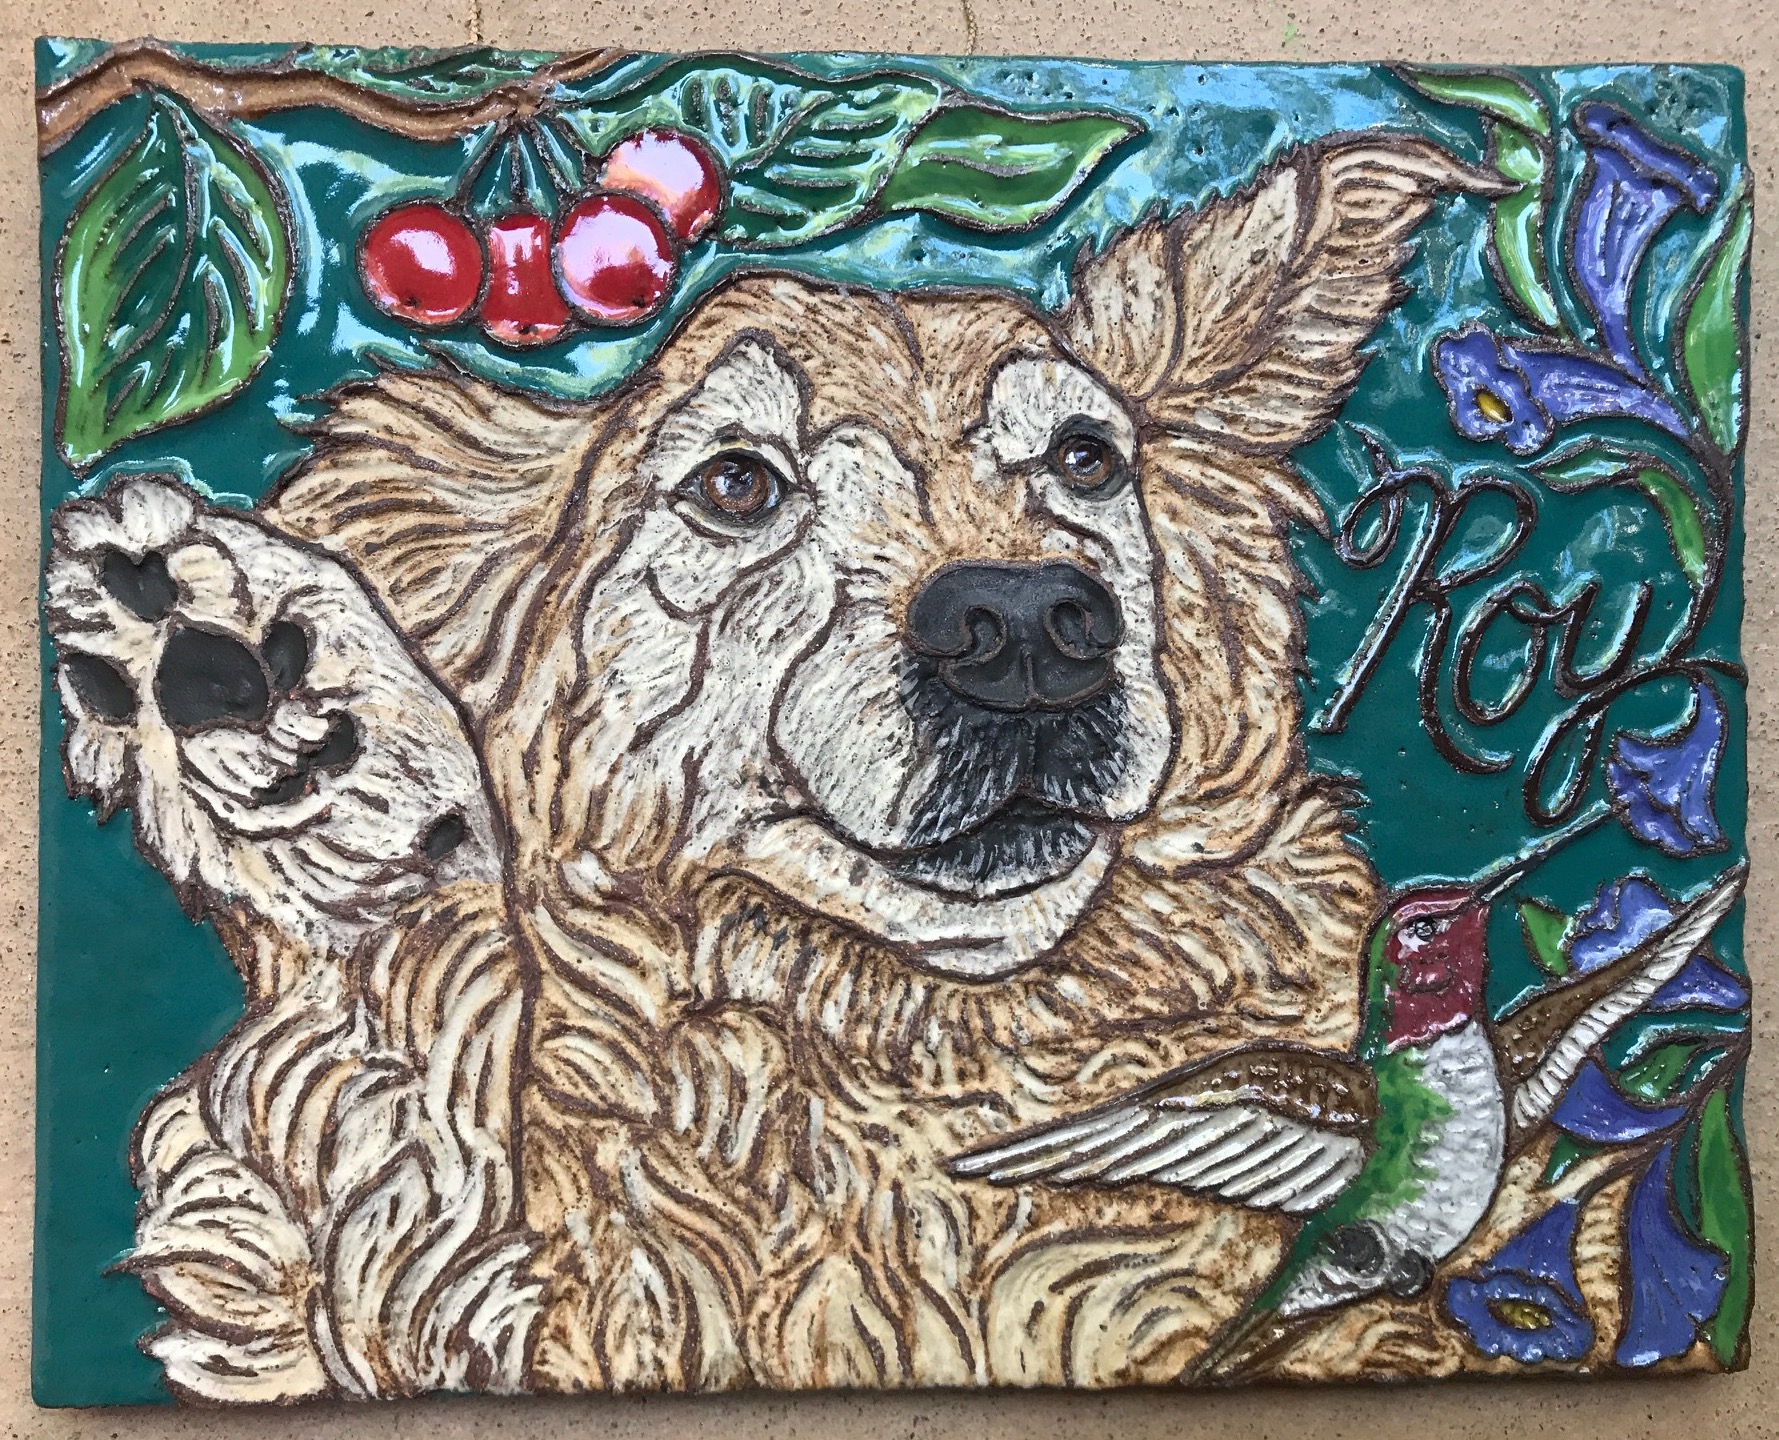 Colorful Tile Memorial for Beloved Dog